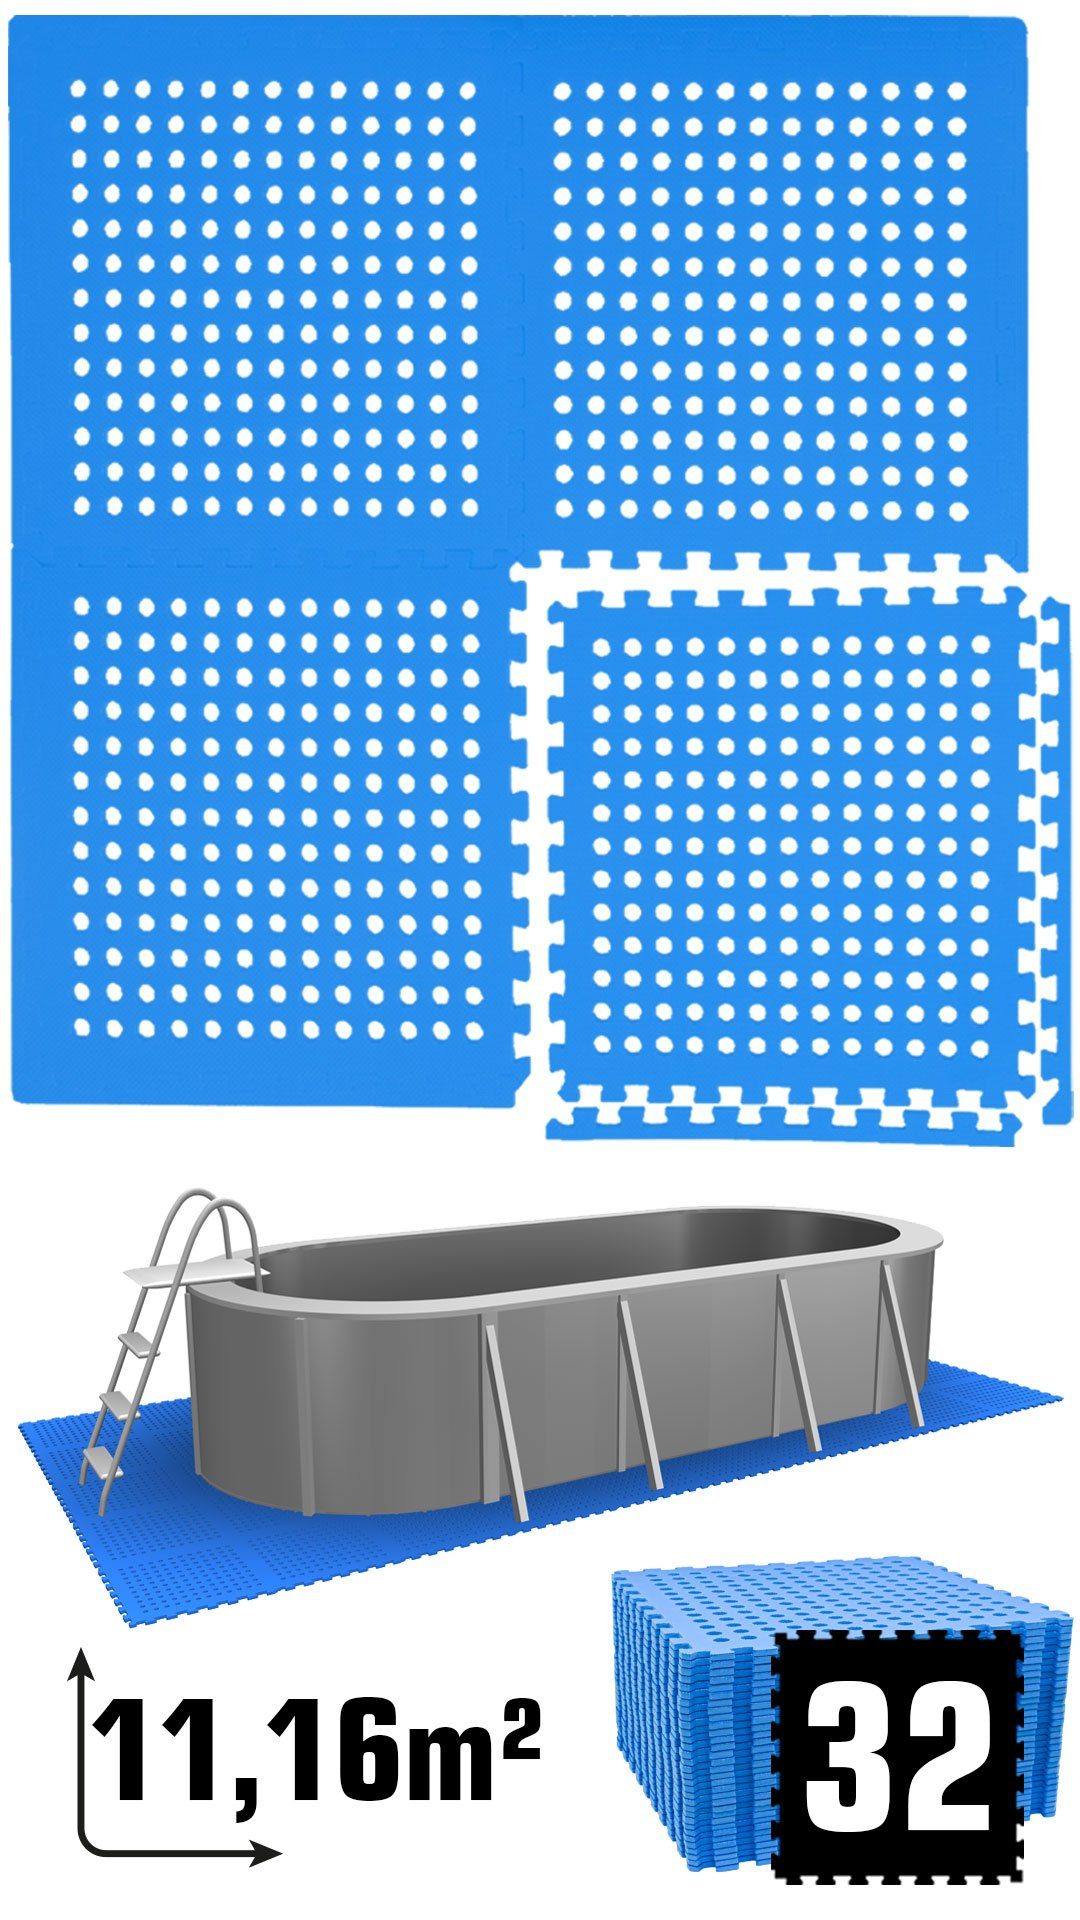 32 Poolunterlage Stecksystem m² eyepower Matten 11,2 62x62 Blau Set, EVA rutschfest Bodenmatte